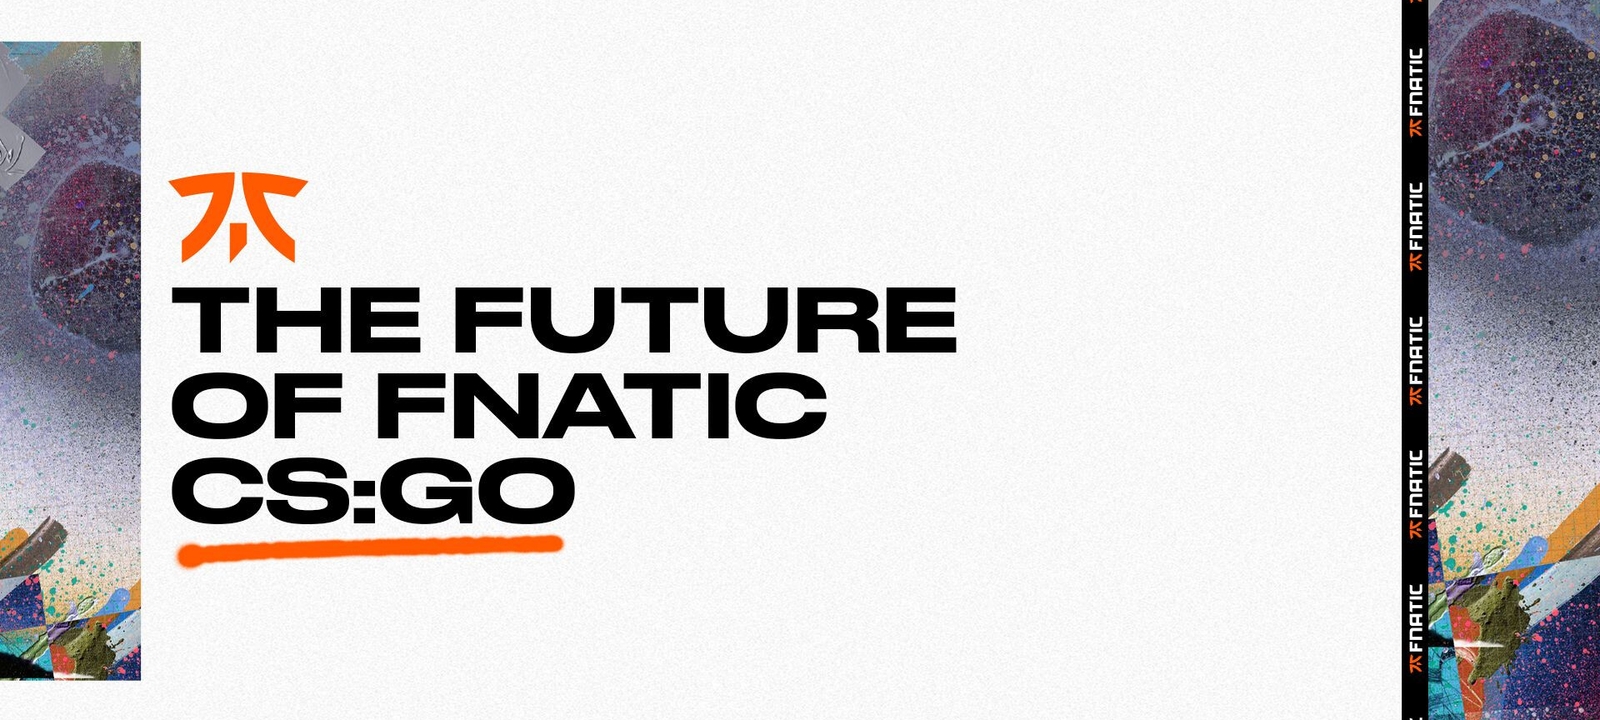 The Future of Fnatic CS:GO